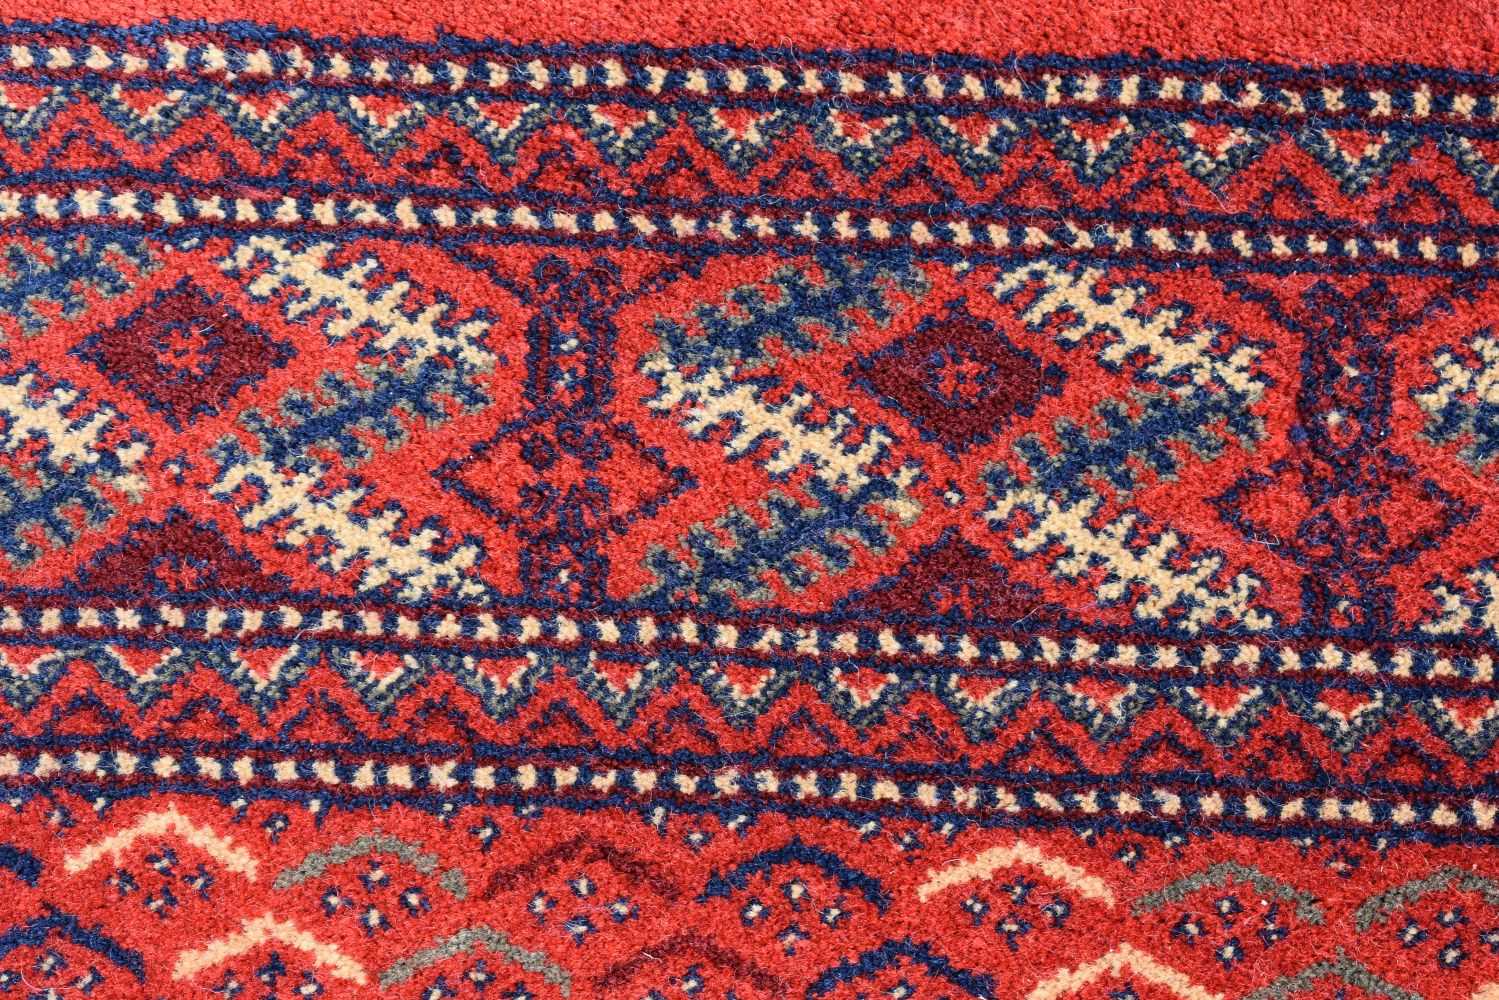 A Turkish Kirman rug 297 x 201 cm - Image 9 of 16